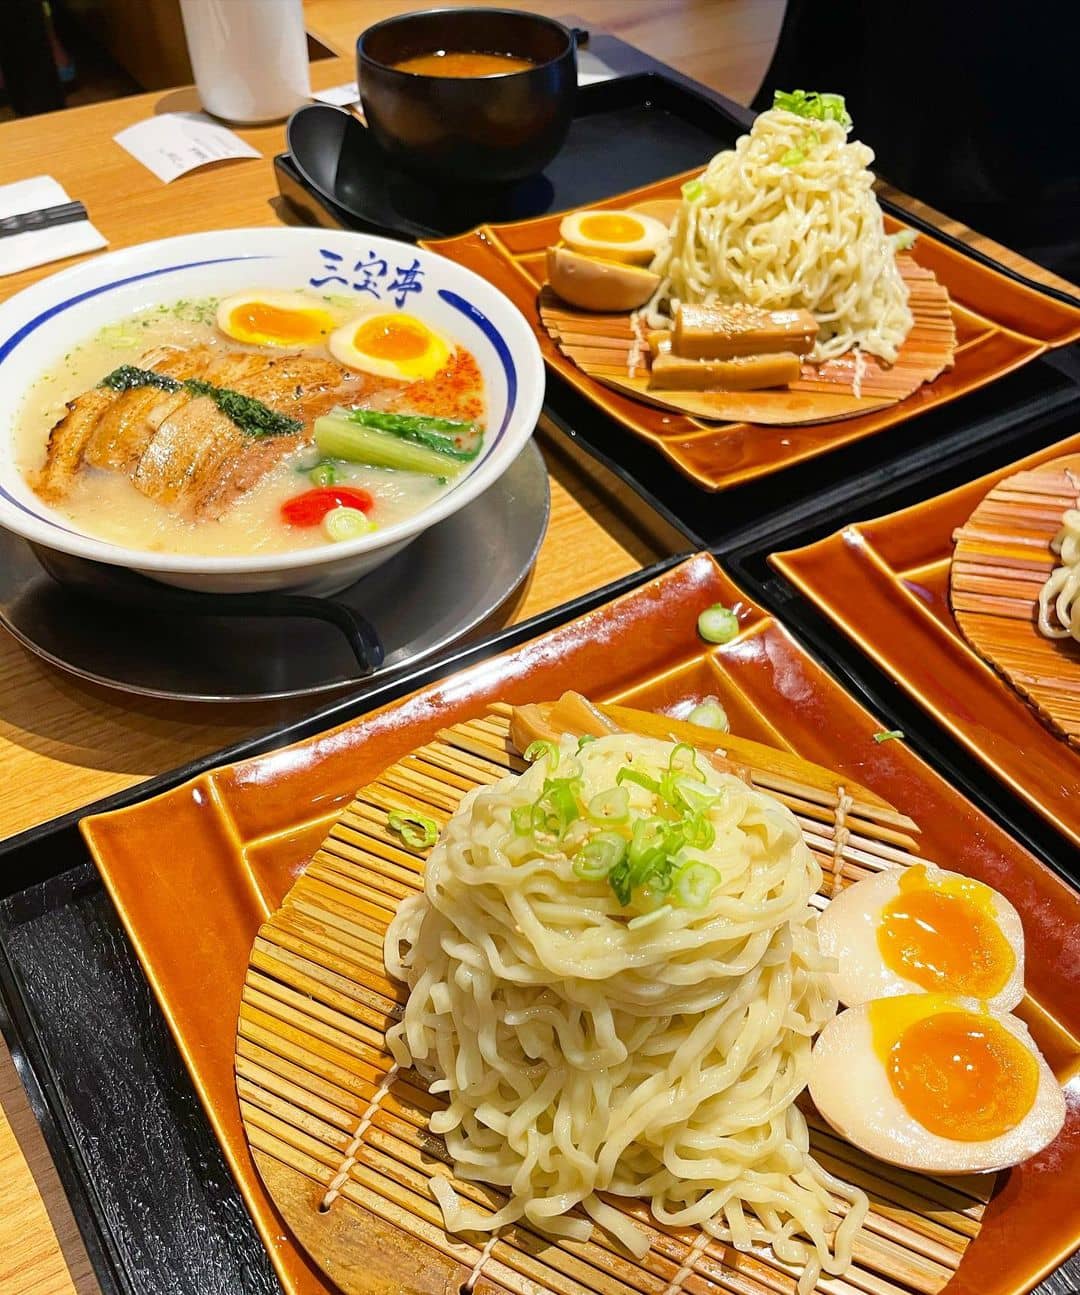 best ramen richmond - sanpoutei tsuken cold noodles on plates